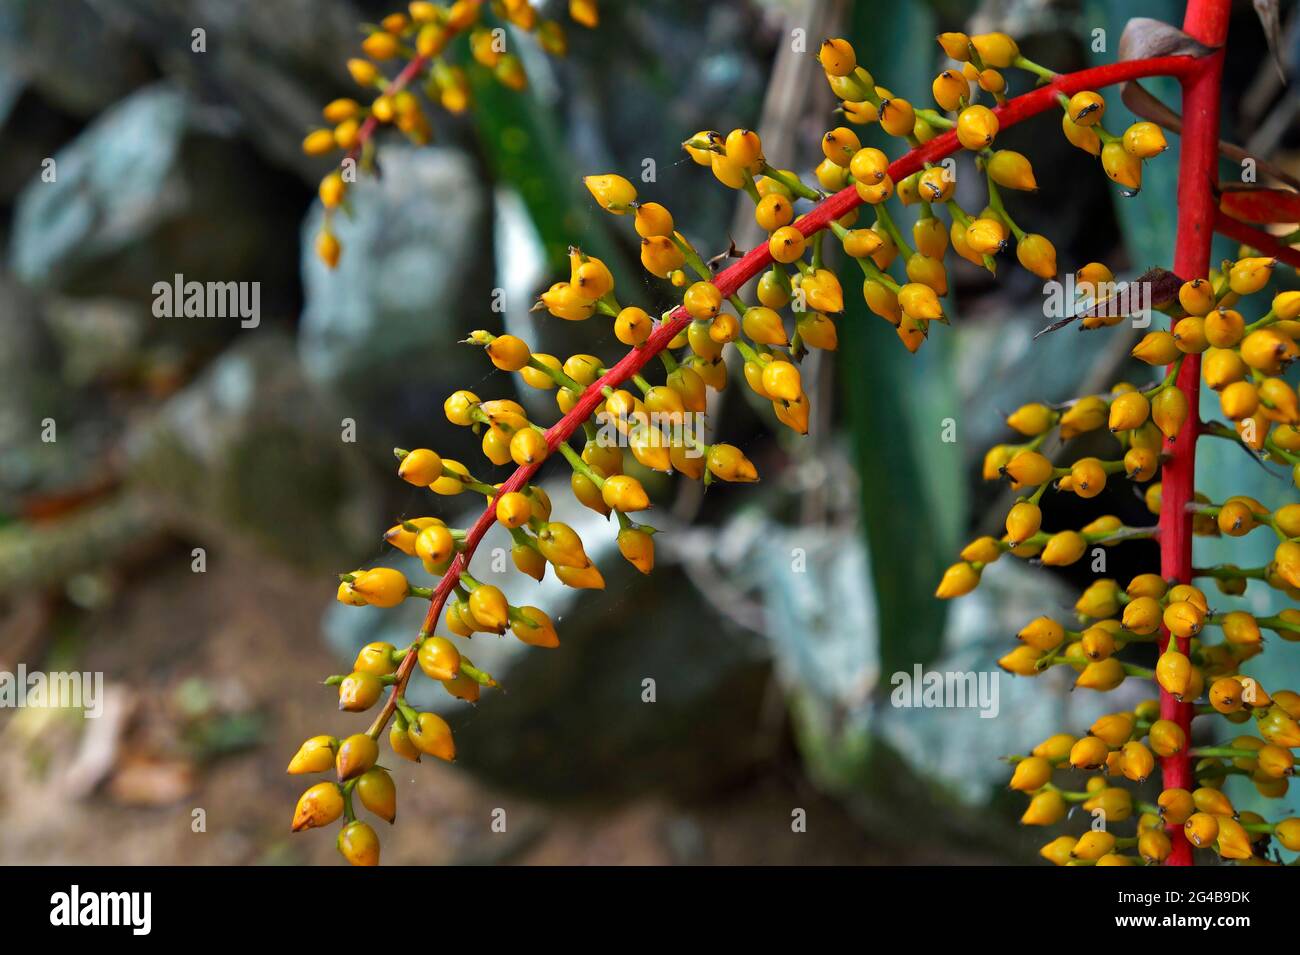 Bromeliad fruits, Rio de Janeiro, Brazil Stock Photo